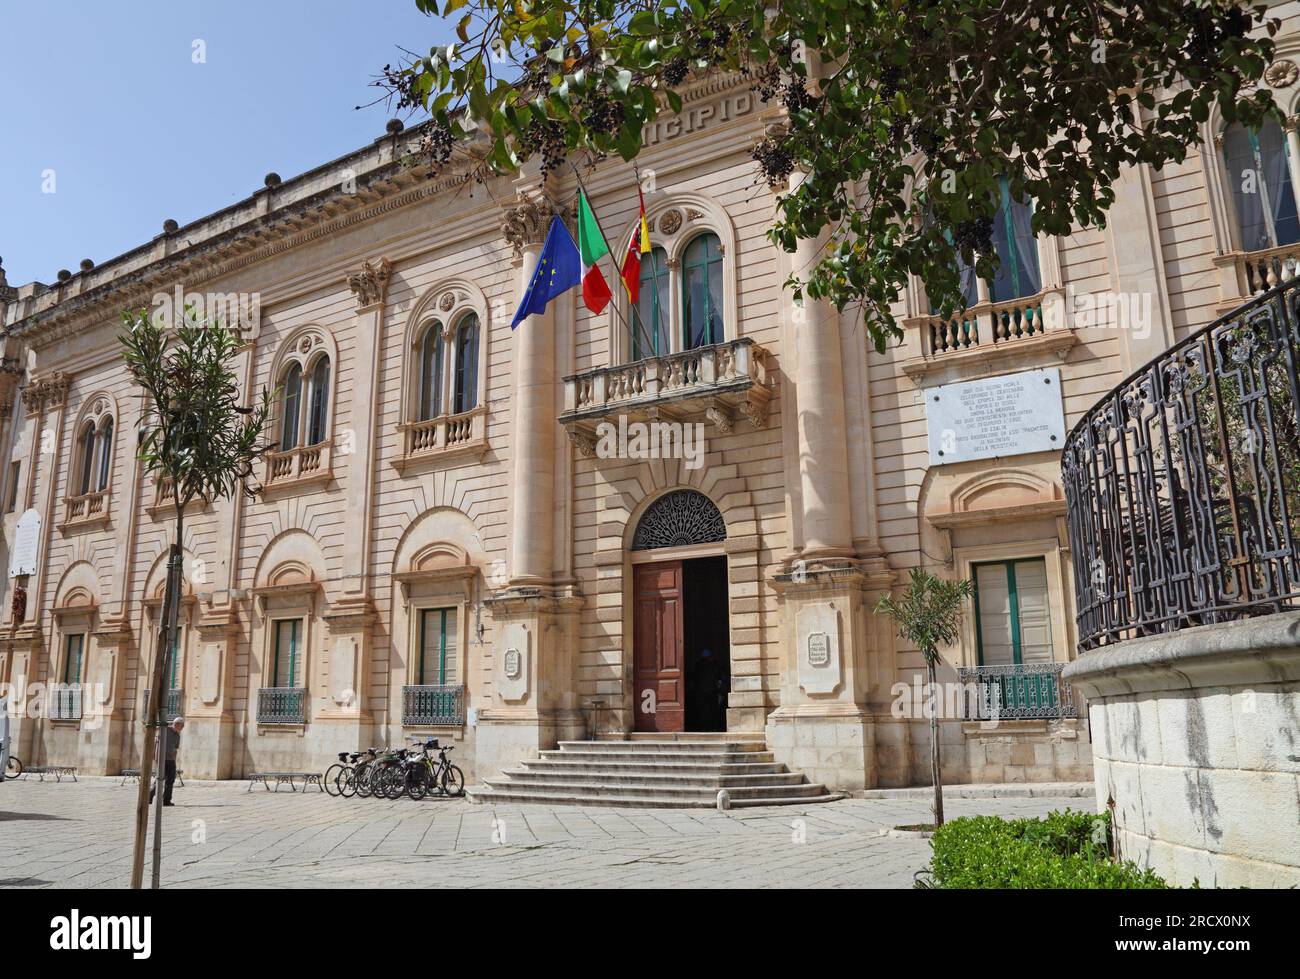 Hôtel de ville, Scicli, emplacement du poste de police de Vigata dans la célèbre série de détectives Montalbano, Sicile, Italie Banque D'Images